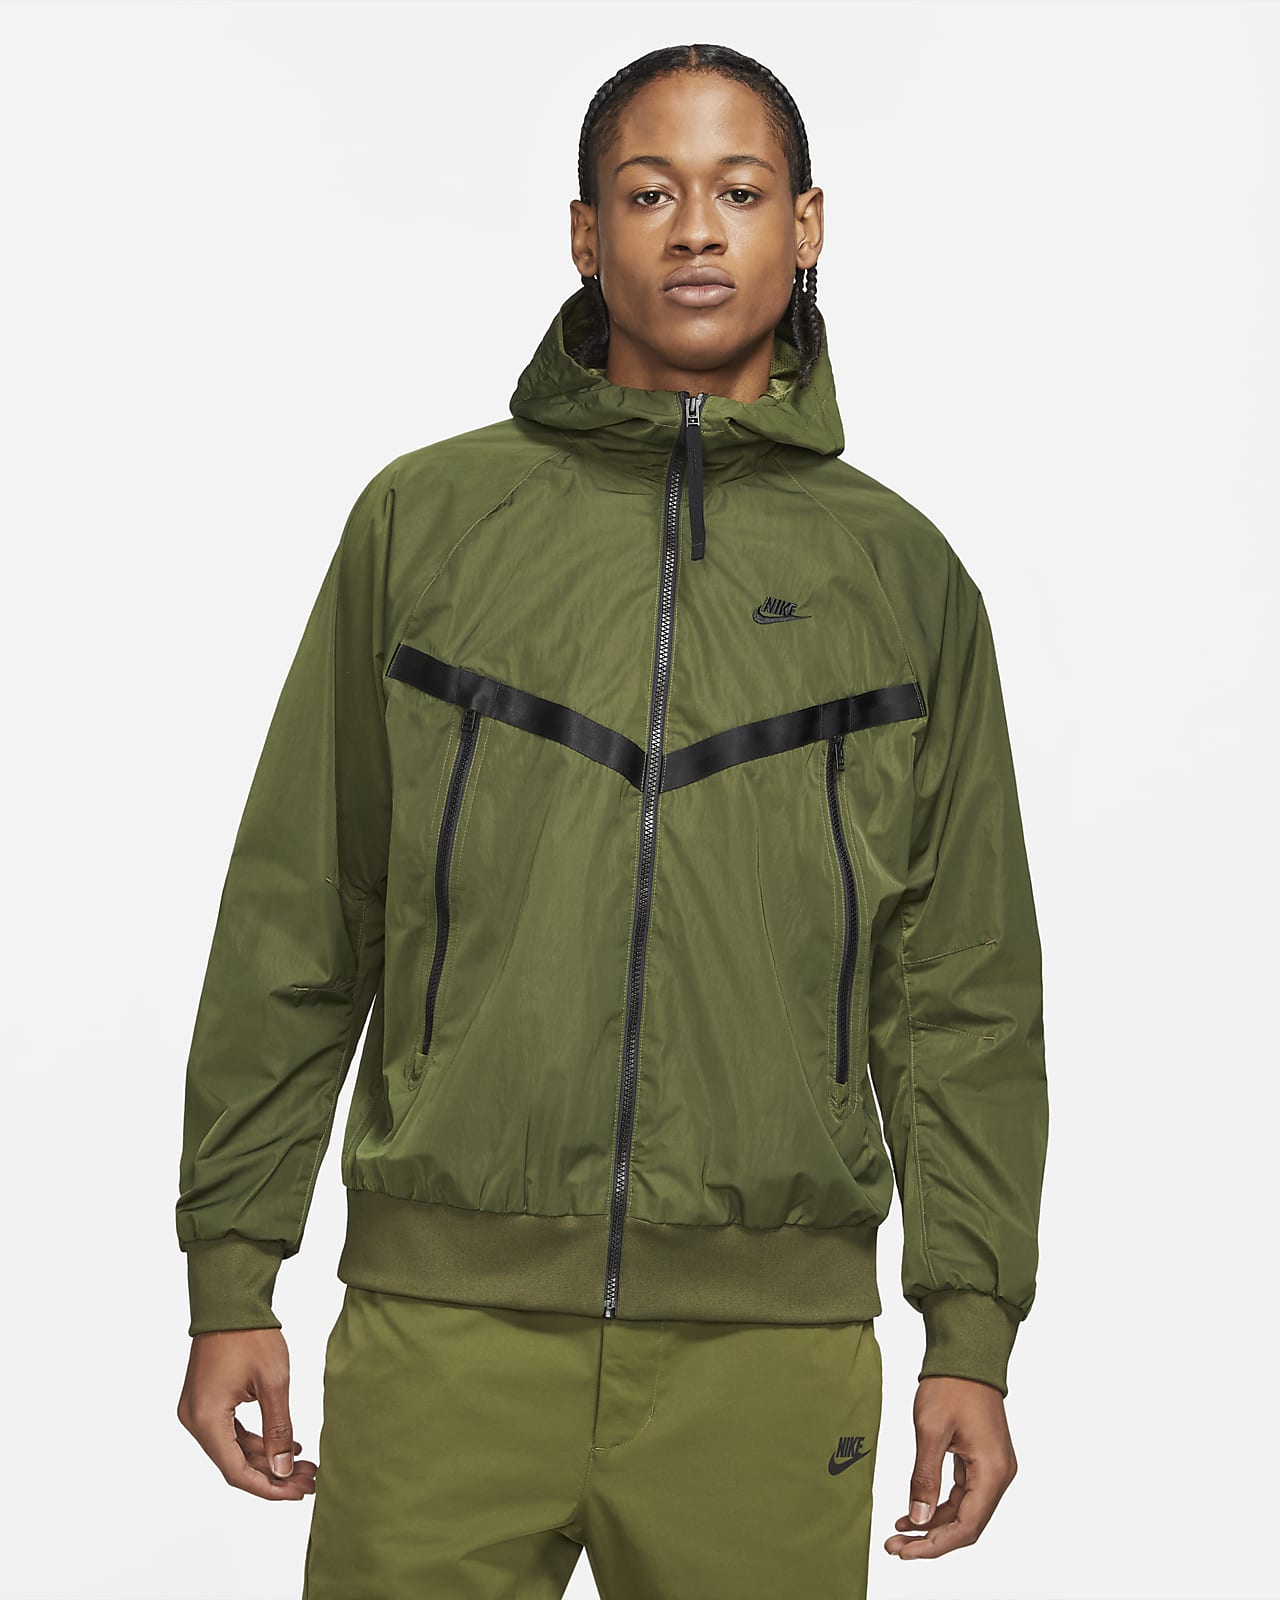 Onbeleefd laten vallen Meerdere Nike Sportswear Premium Essentials Men's Unlined Hooded Windrunner Jacket.  Nike.com